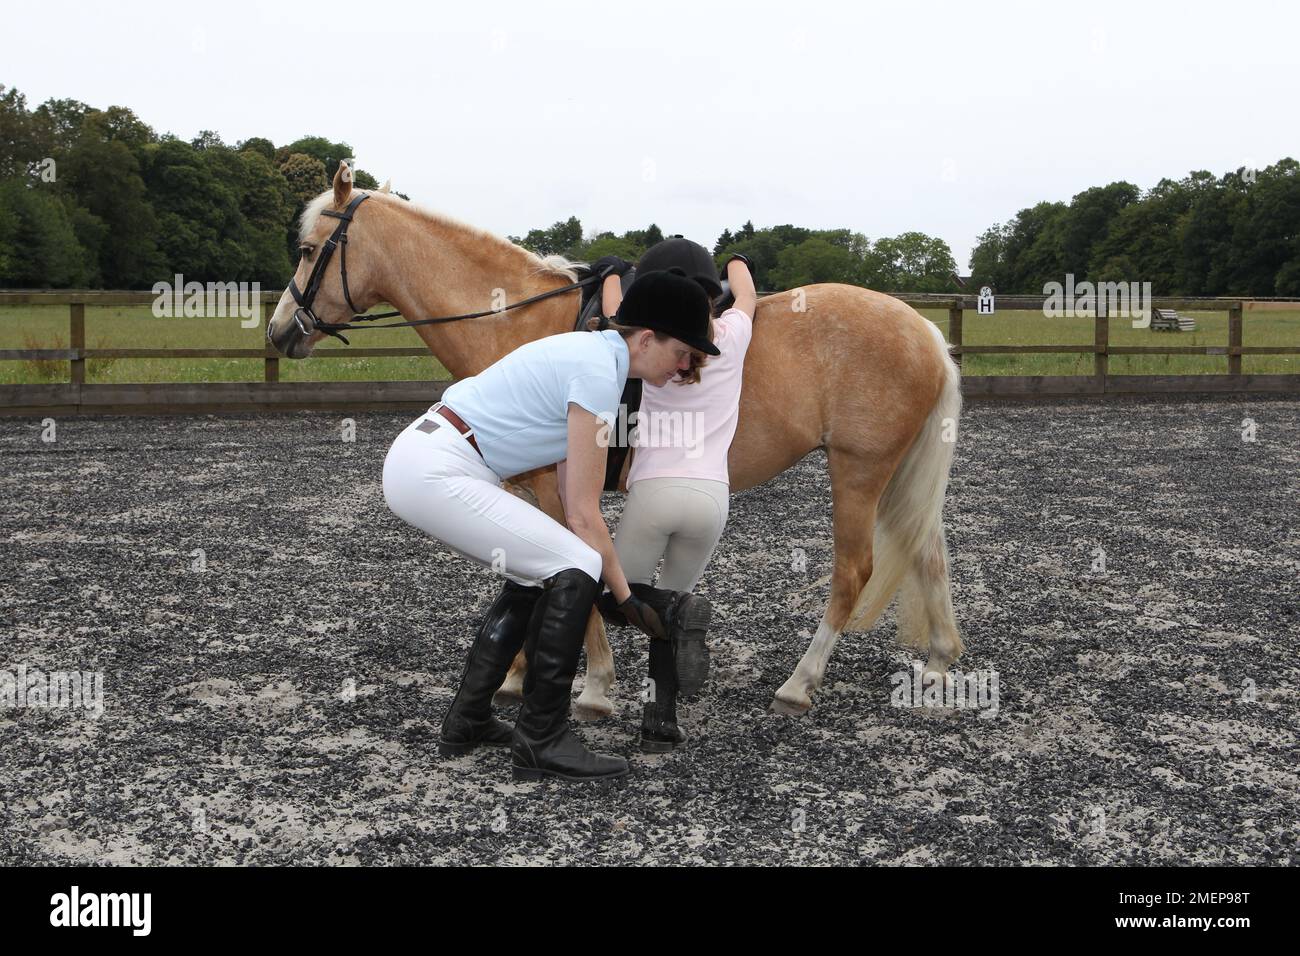 Lehrerin, die dem jungen Mädchen ein Bein hochmacht, während sie das palomino-Pony während des Reitstages in der Koppel besteigt Stockfoto